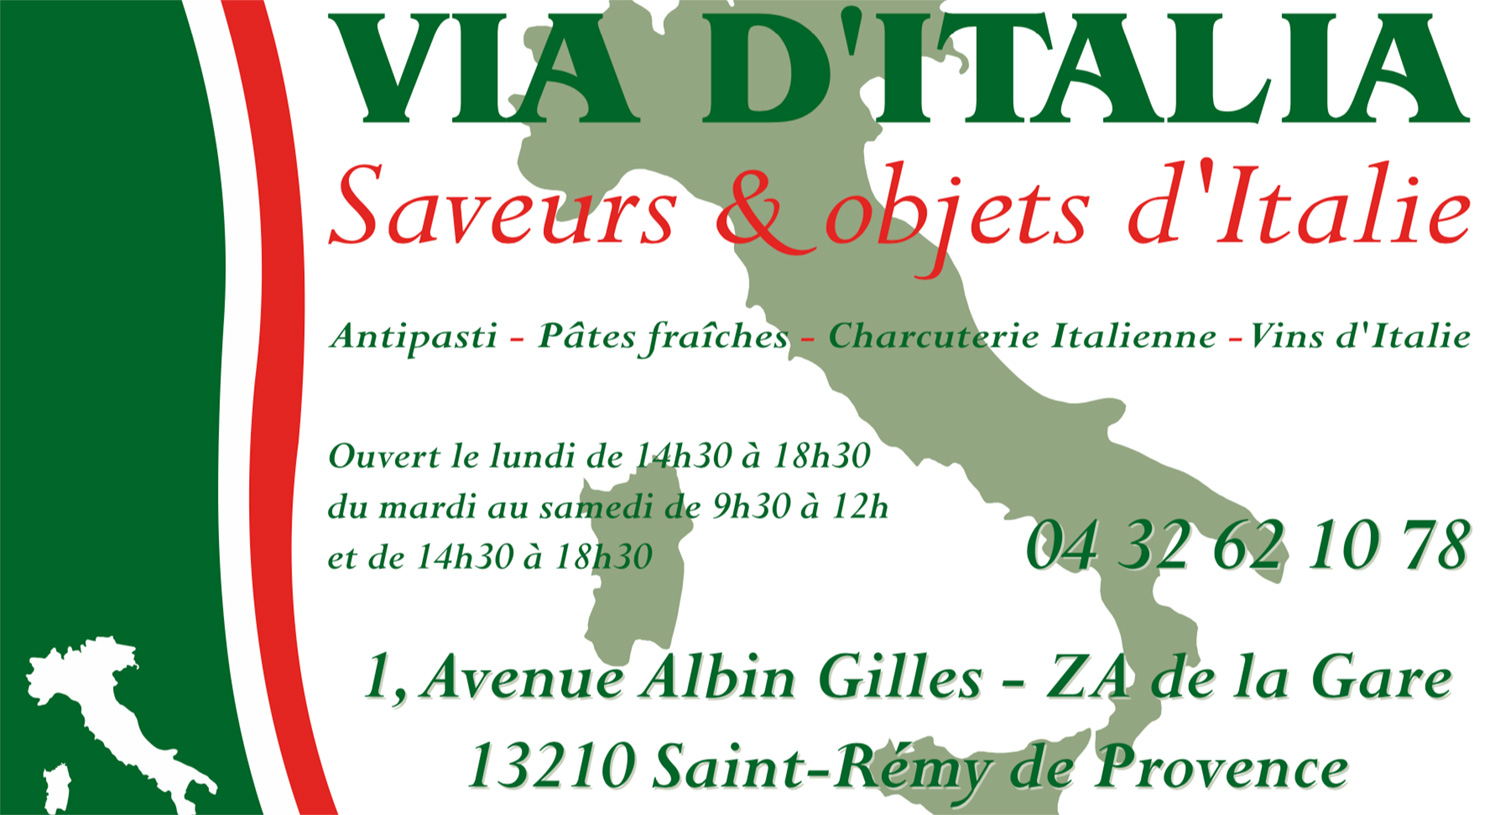 Réalisation de cartes de visite pour le magasin Via d'Italia - Saint-Rémy de Provence